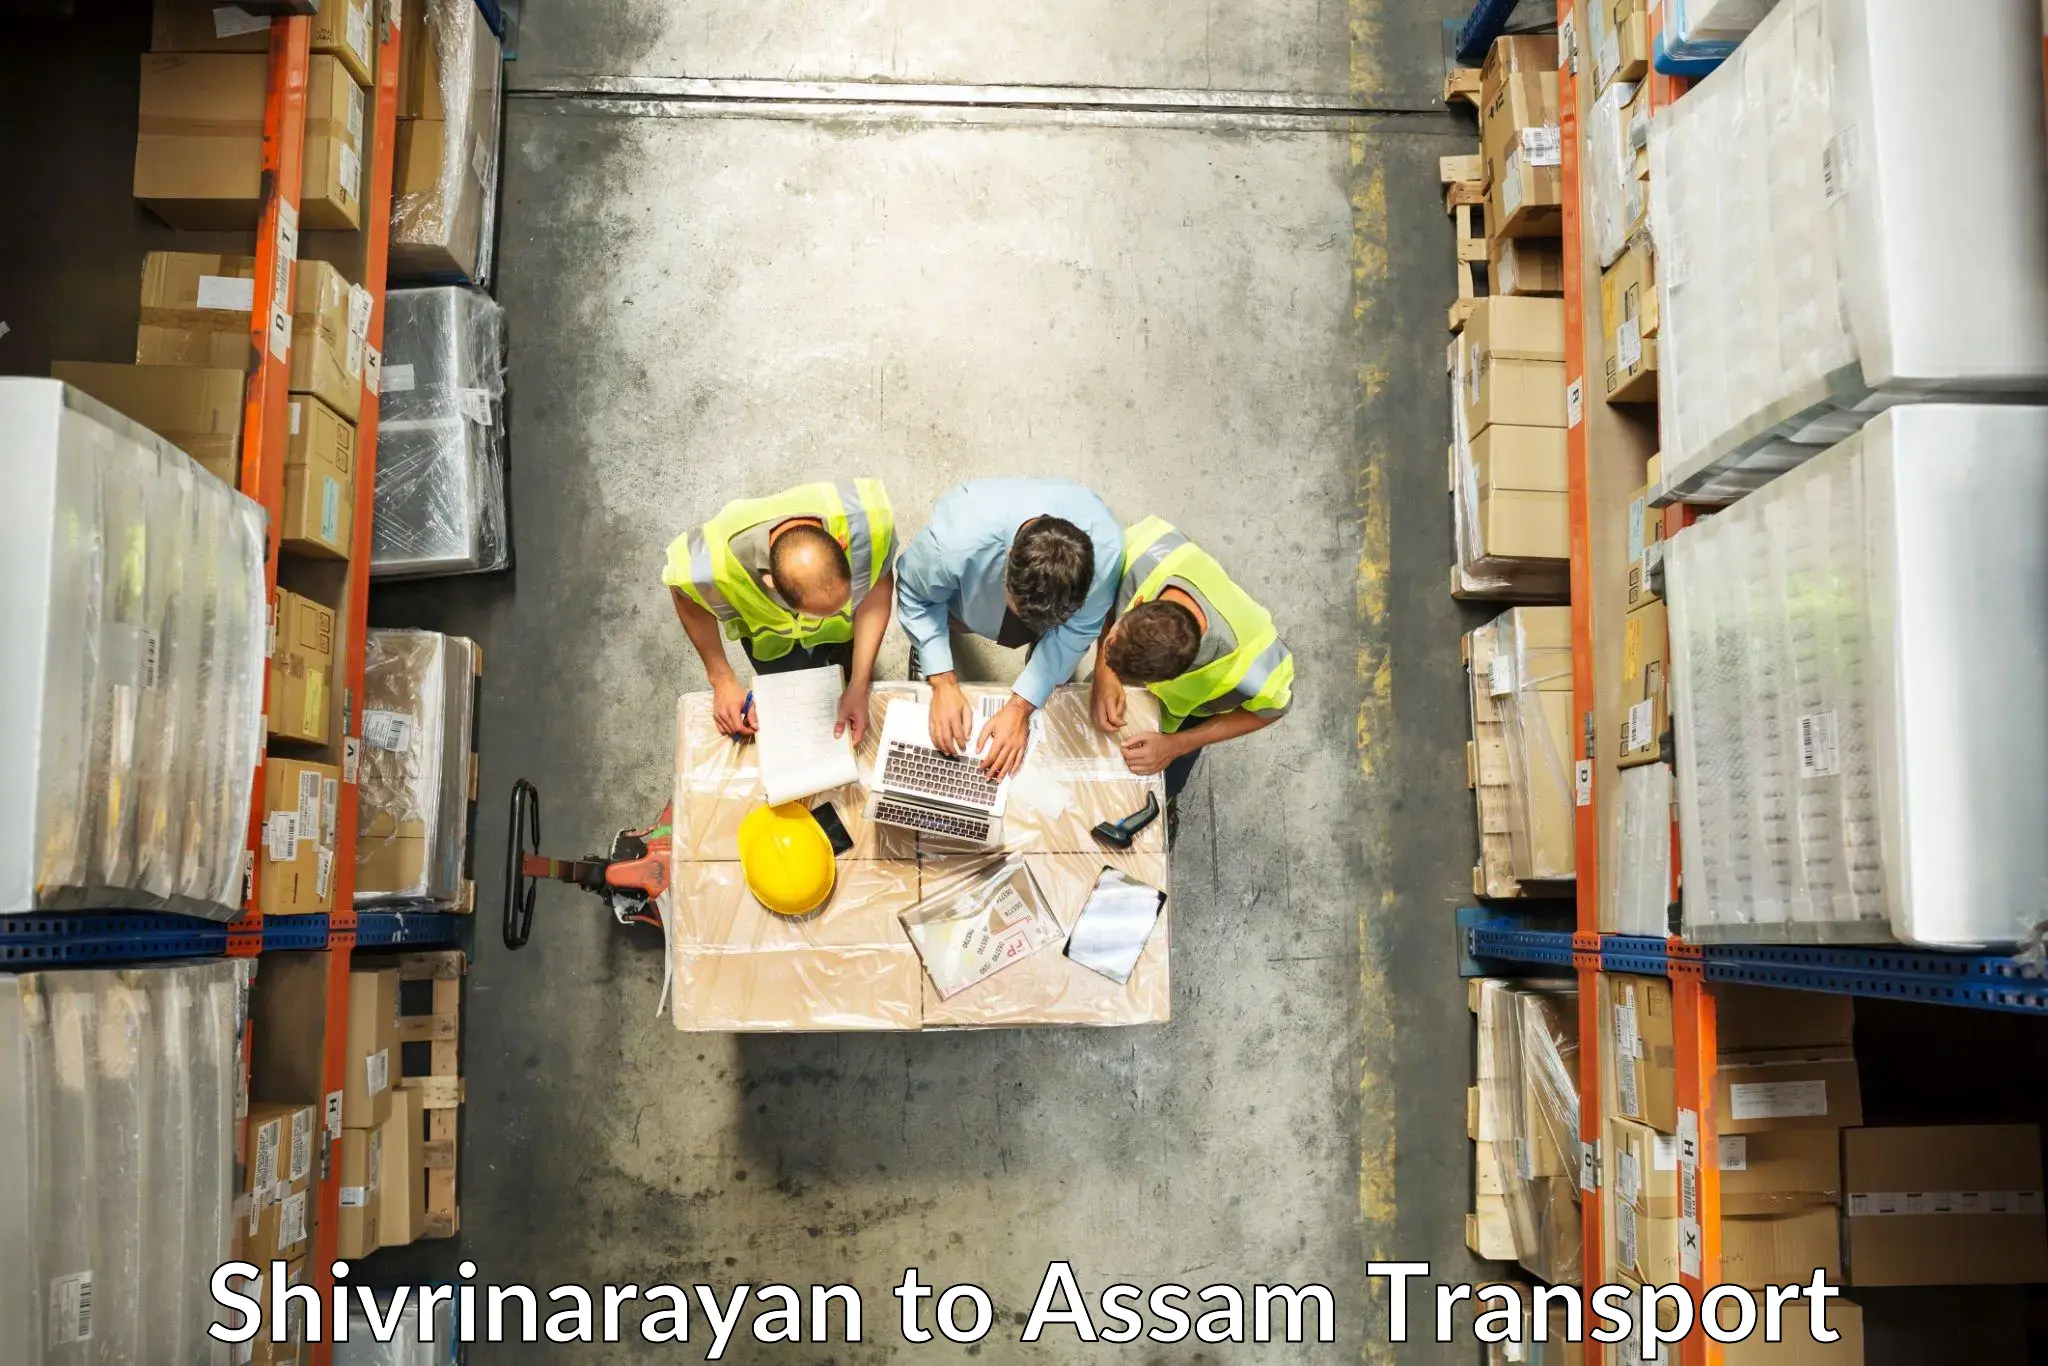 Container transportation services Shivrinarayan to Mayang